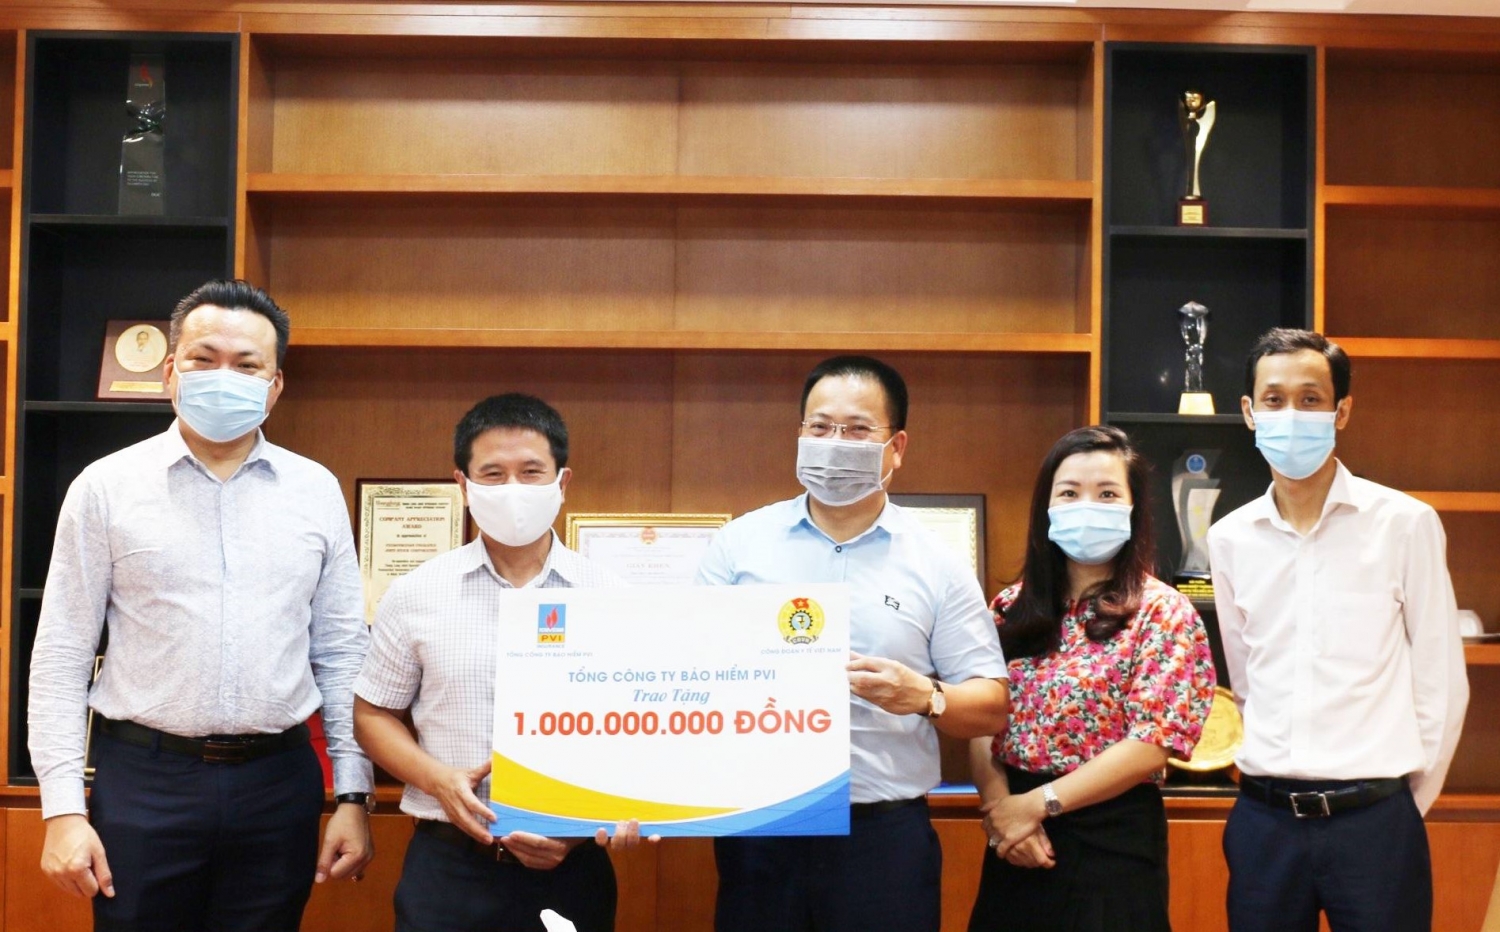 Bảo hiểm PVI tự hào là doanh nghiệp bảo hiểm duy nhất lọt Top 50 Doanh nghiệp lợi nhuận tốt nhất Việt Nam